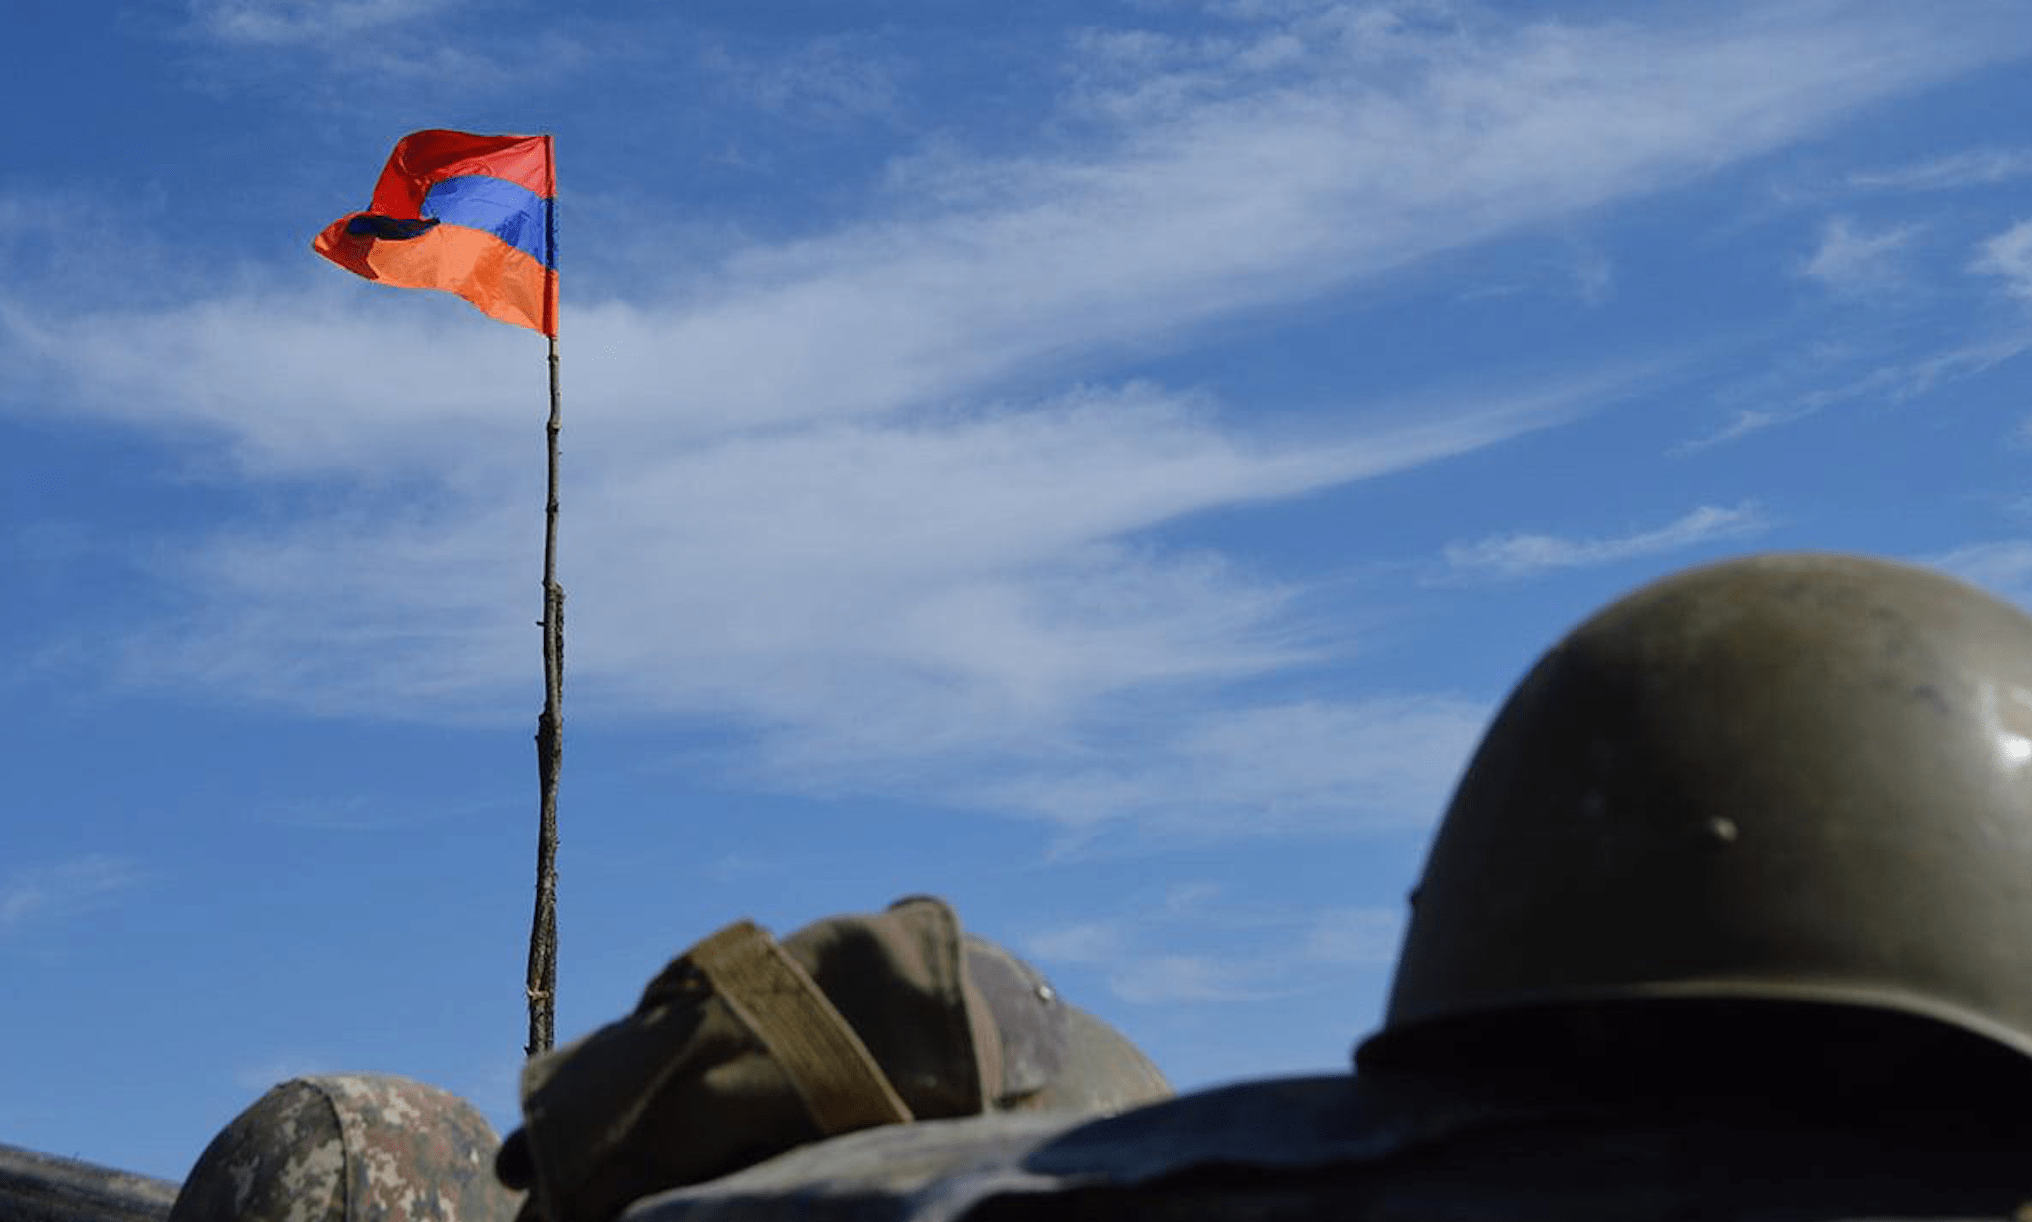 Rhetoric escalates in region as Armenian soldier is killed in border skirmish